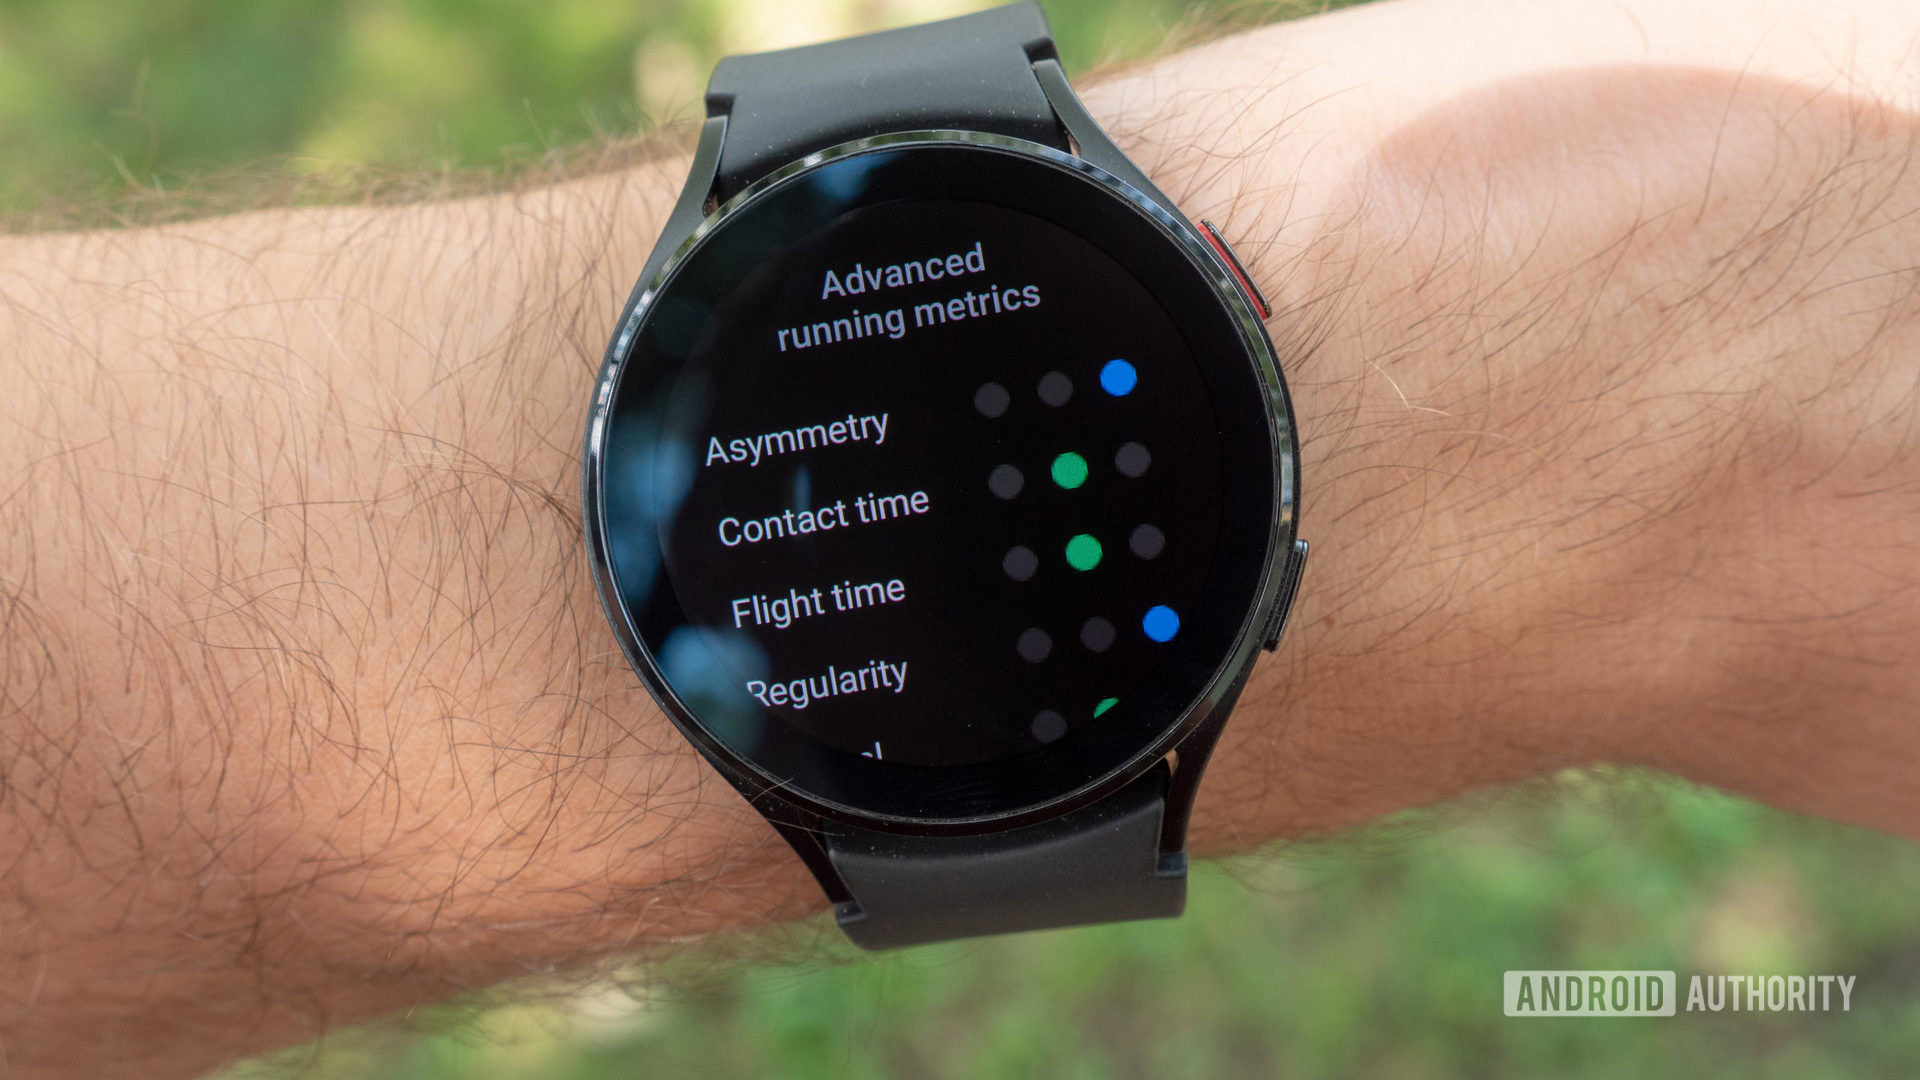 Samsung Galaxy Watch 4 review: Google smartwatch raises bar